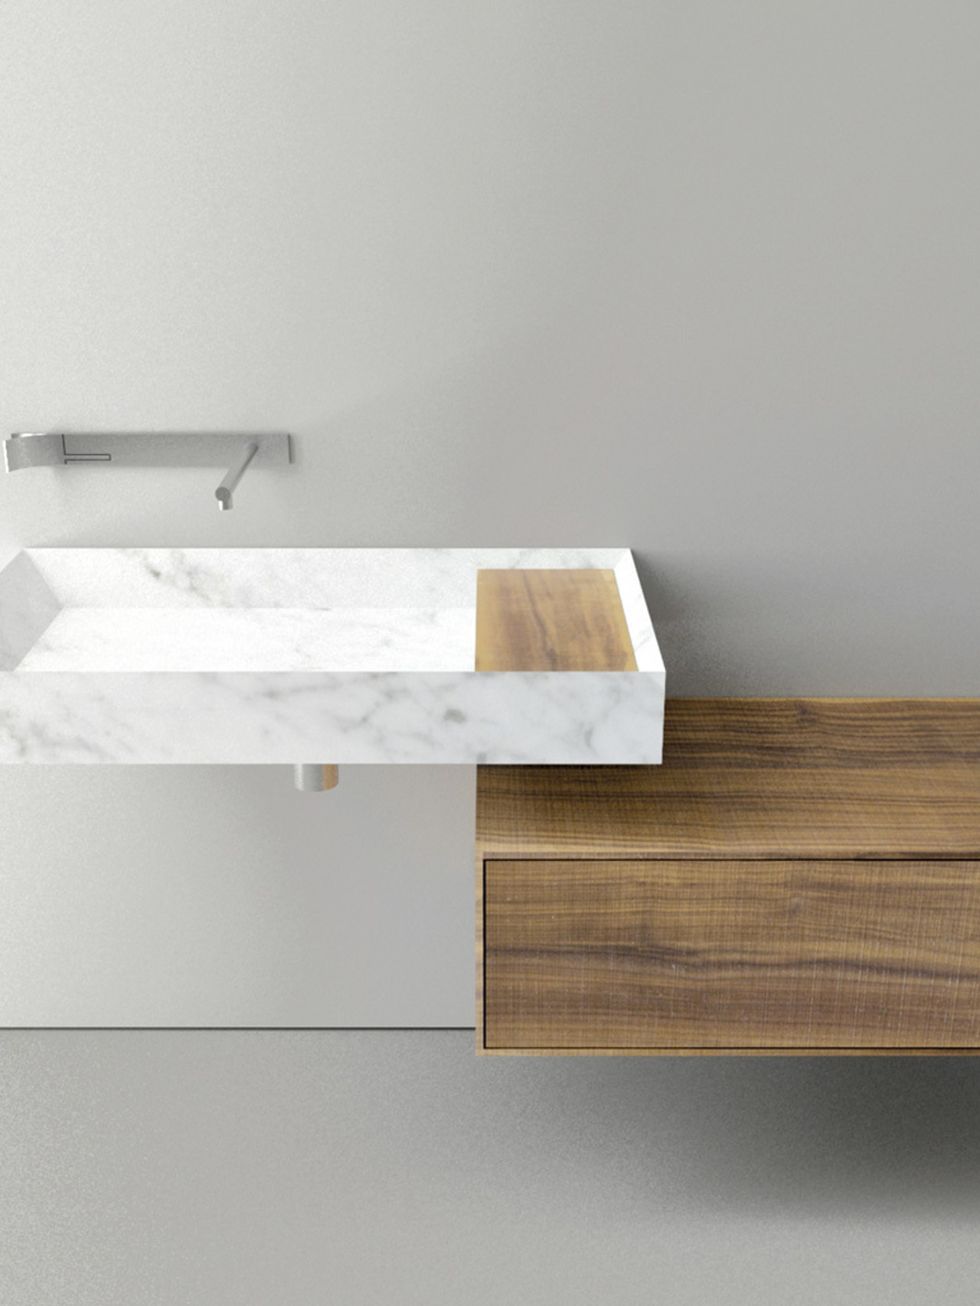 <p>Las vetas del mármol blanco Carrara dan belleza al lavabo<i> A45 Stone,</i> de Victor Vasilev para Boffi. Su color y su superficie pulida contrastan con el tacto de la madera.<i> Love it!&nbsp;</i></p>